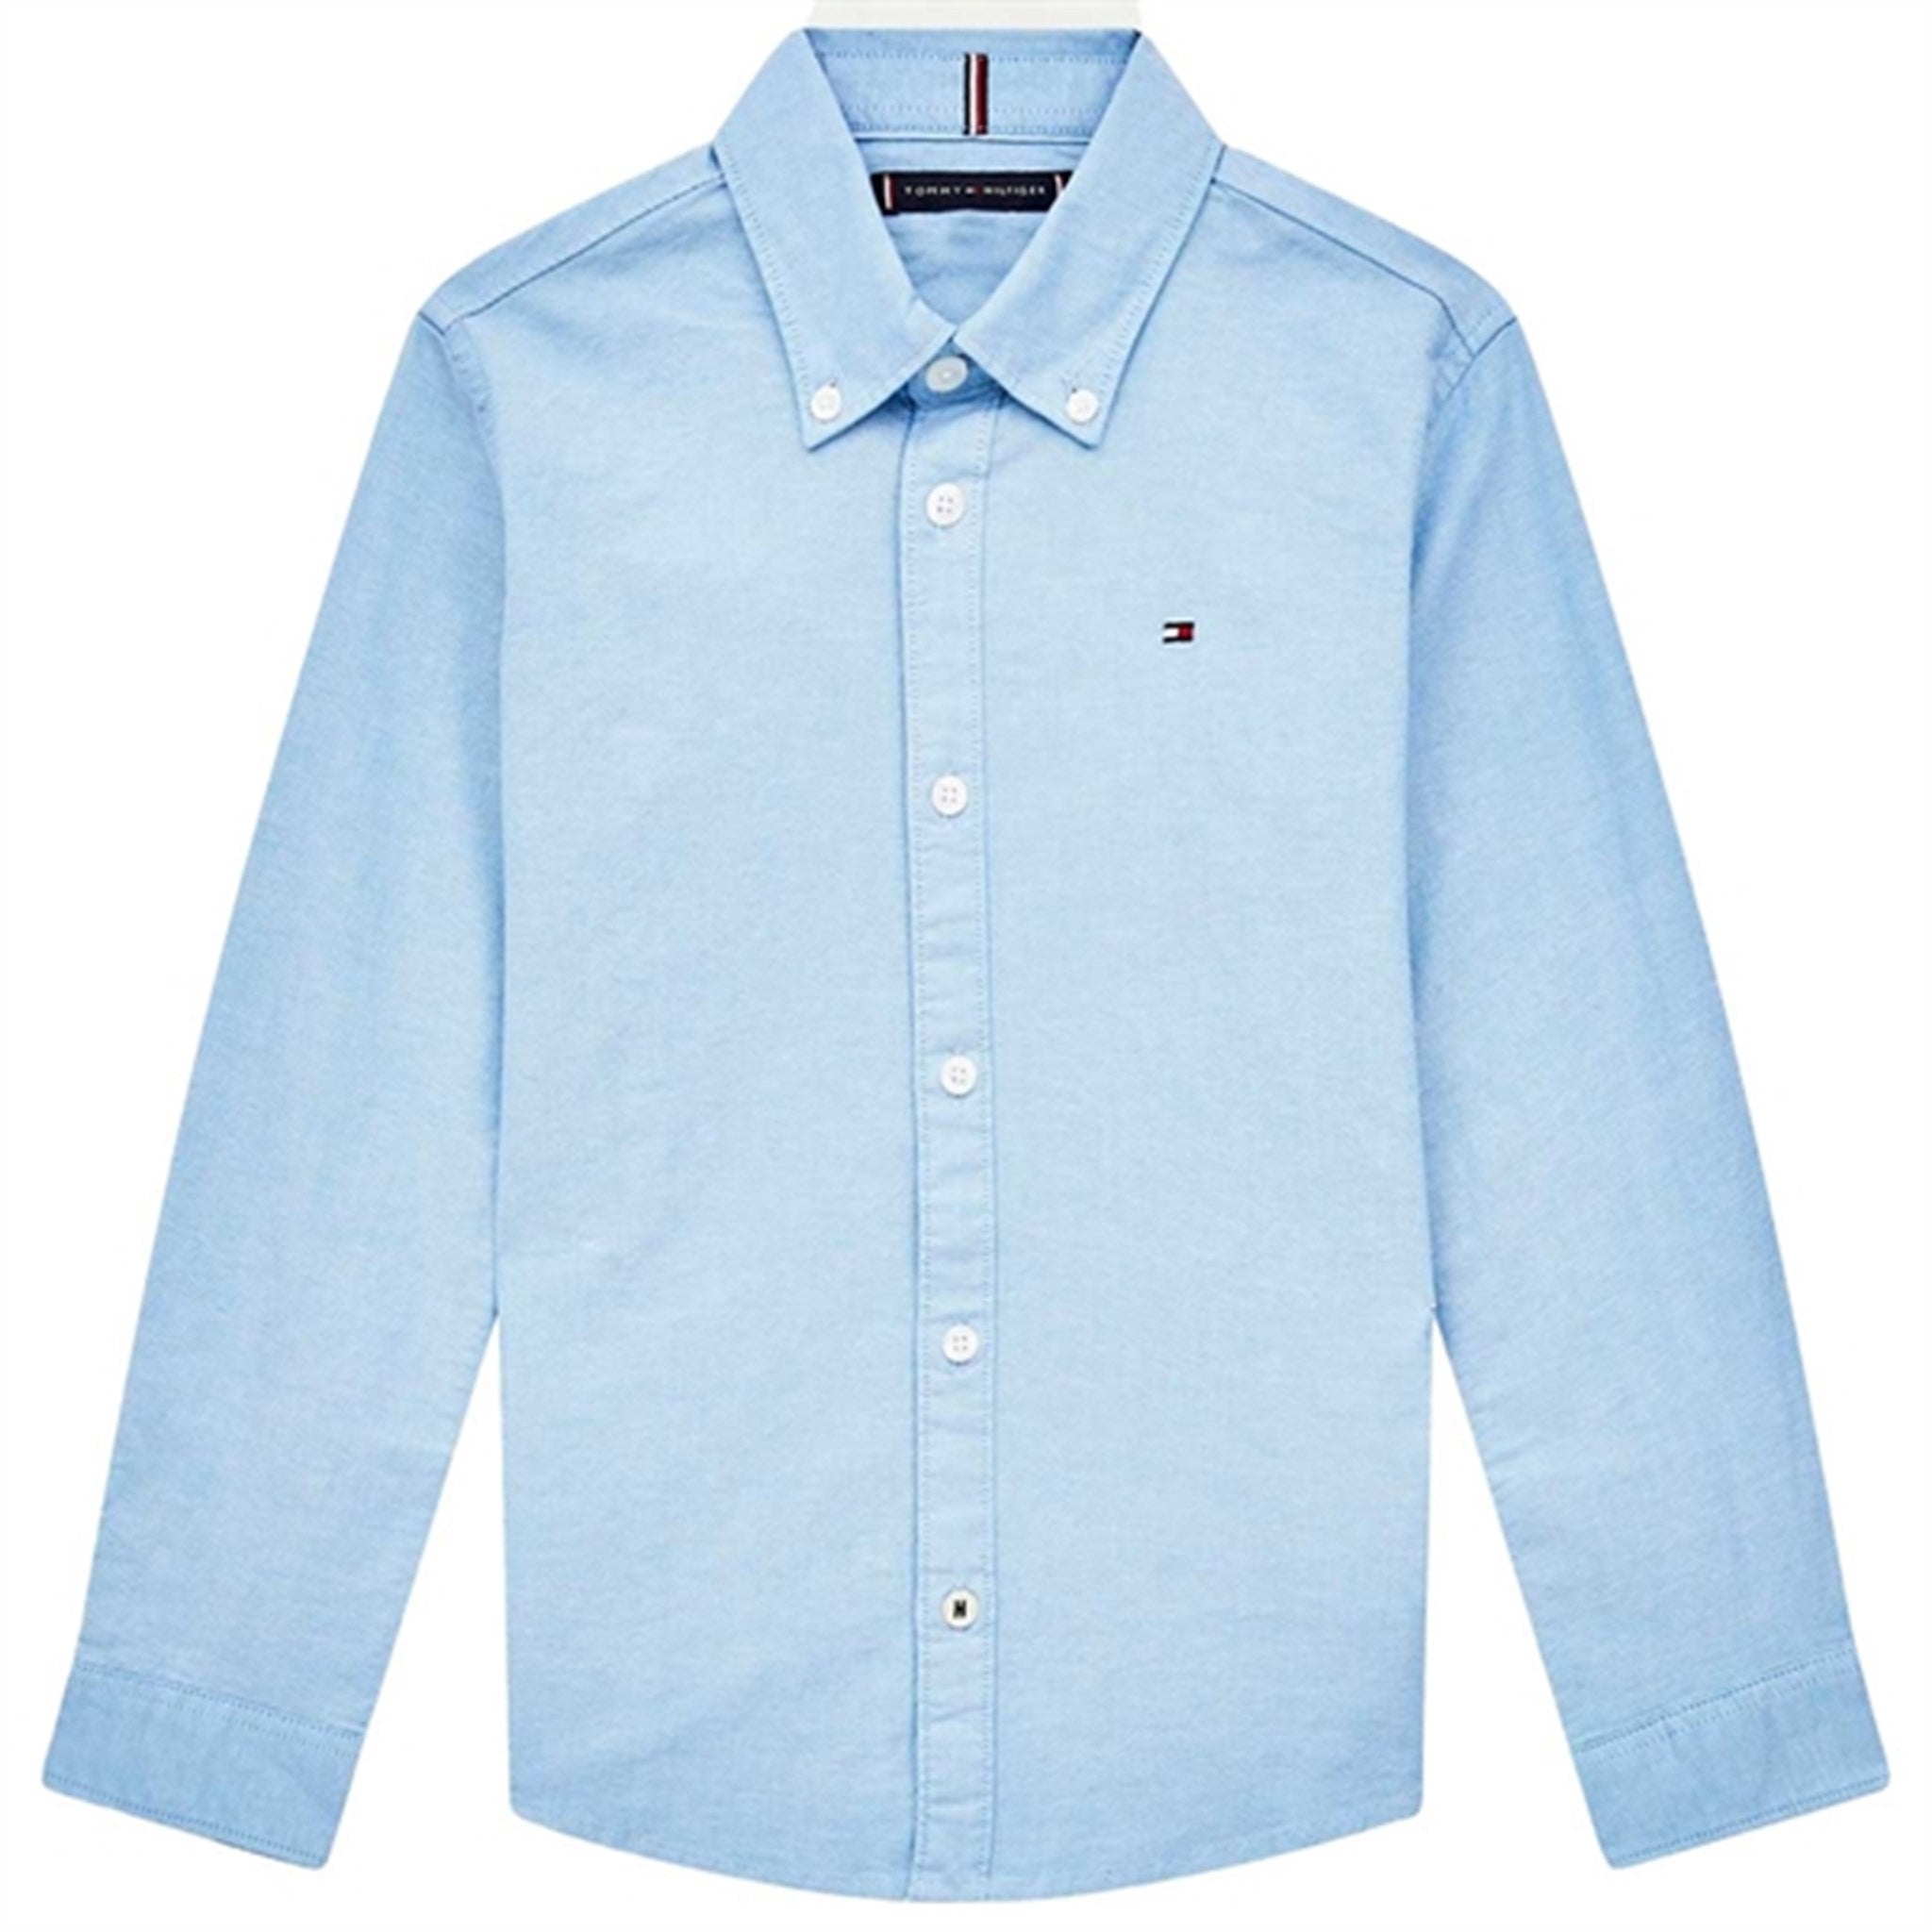 Tommy Hilfiger Boys Stretch Oxford Shirt Calm Blue